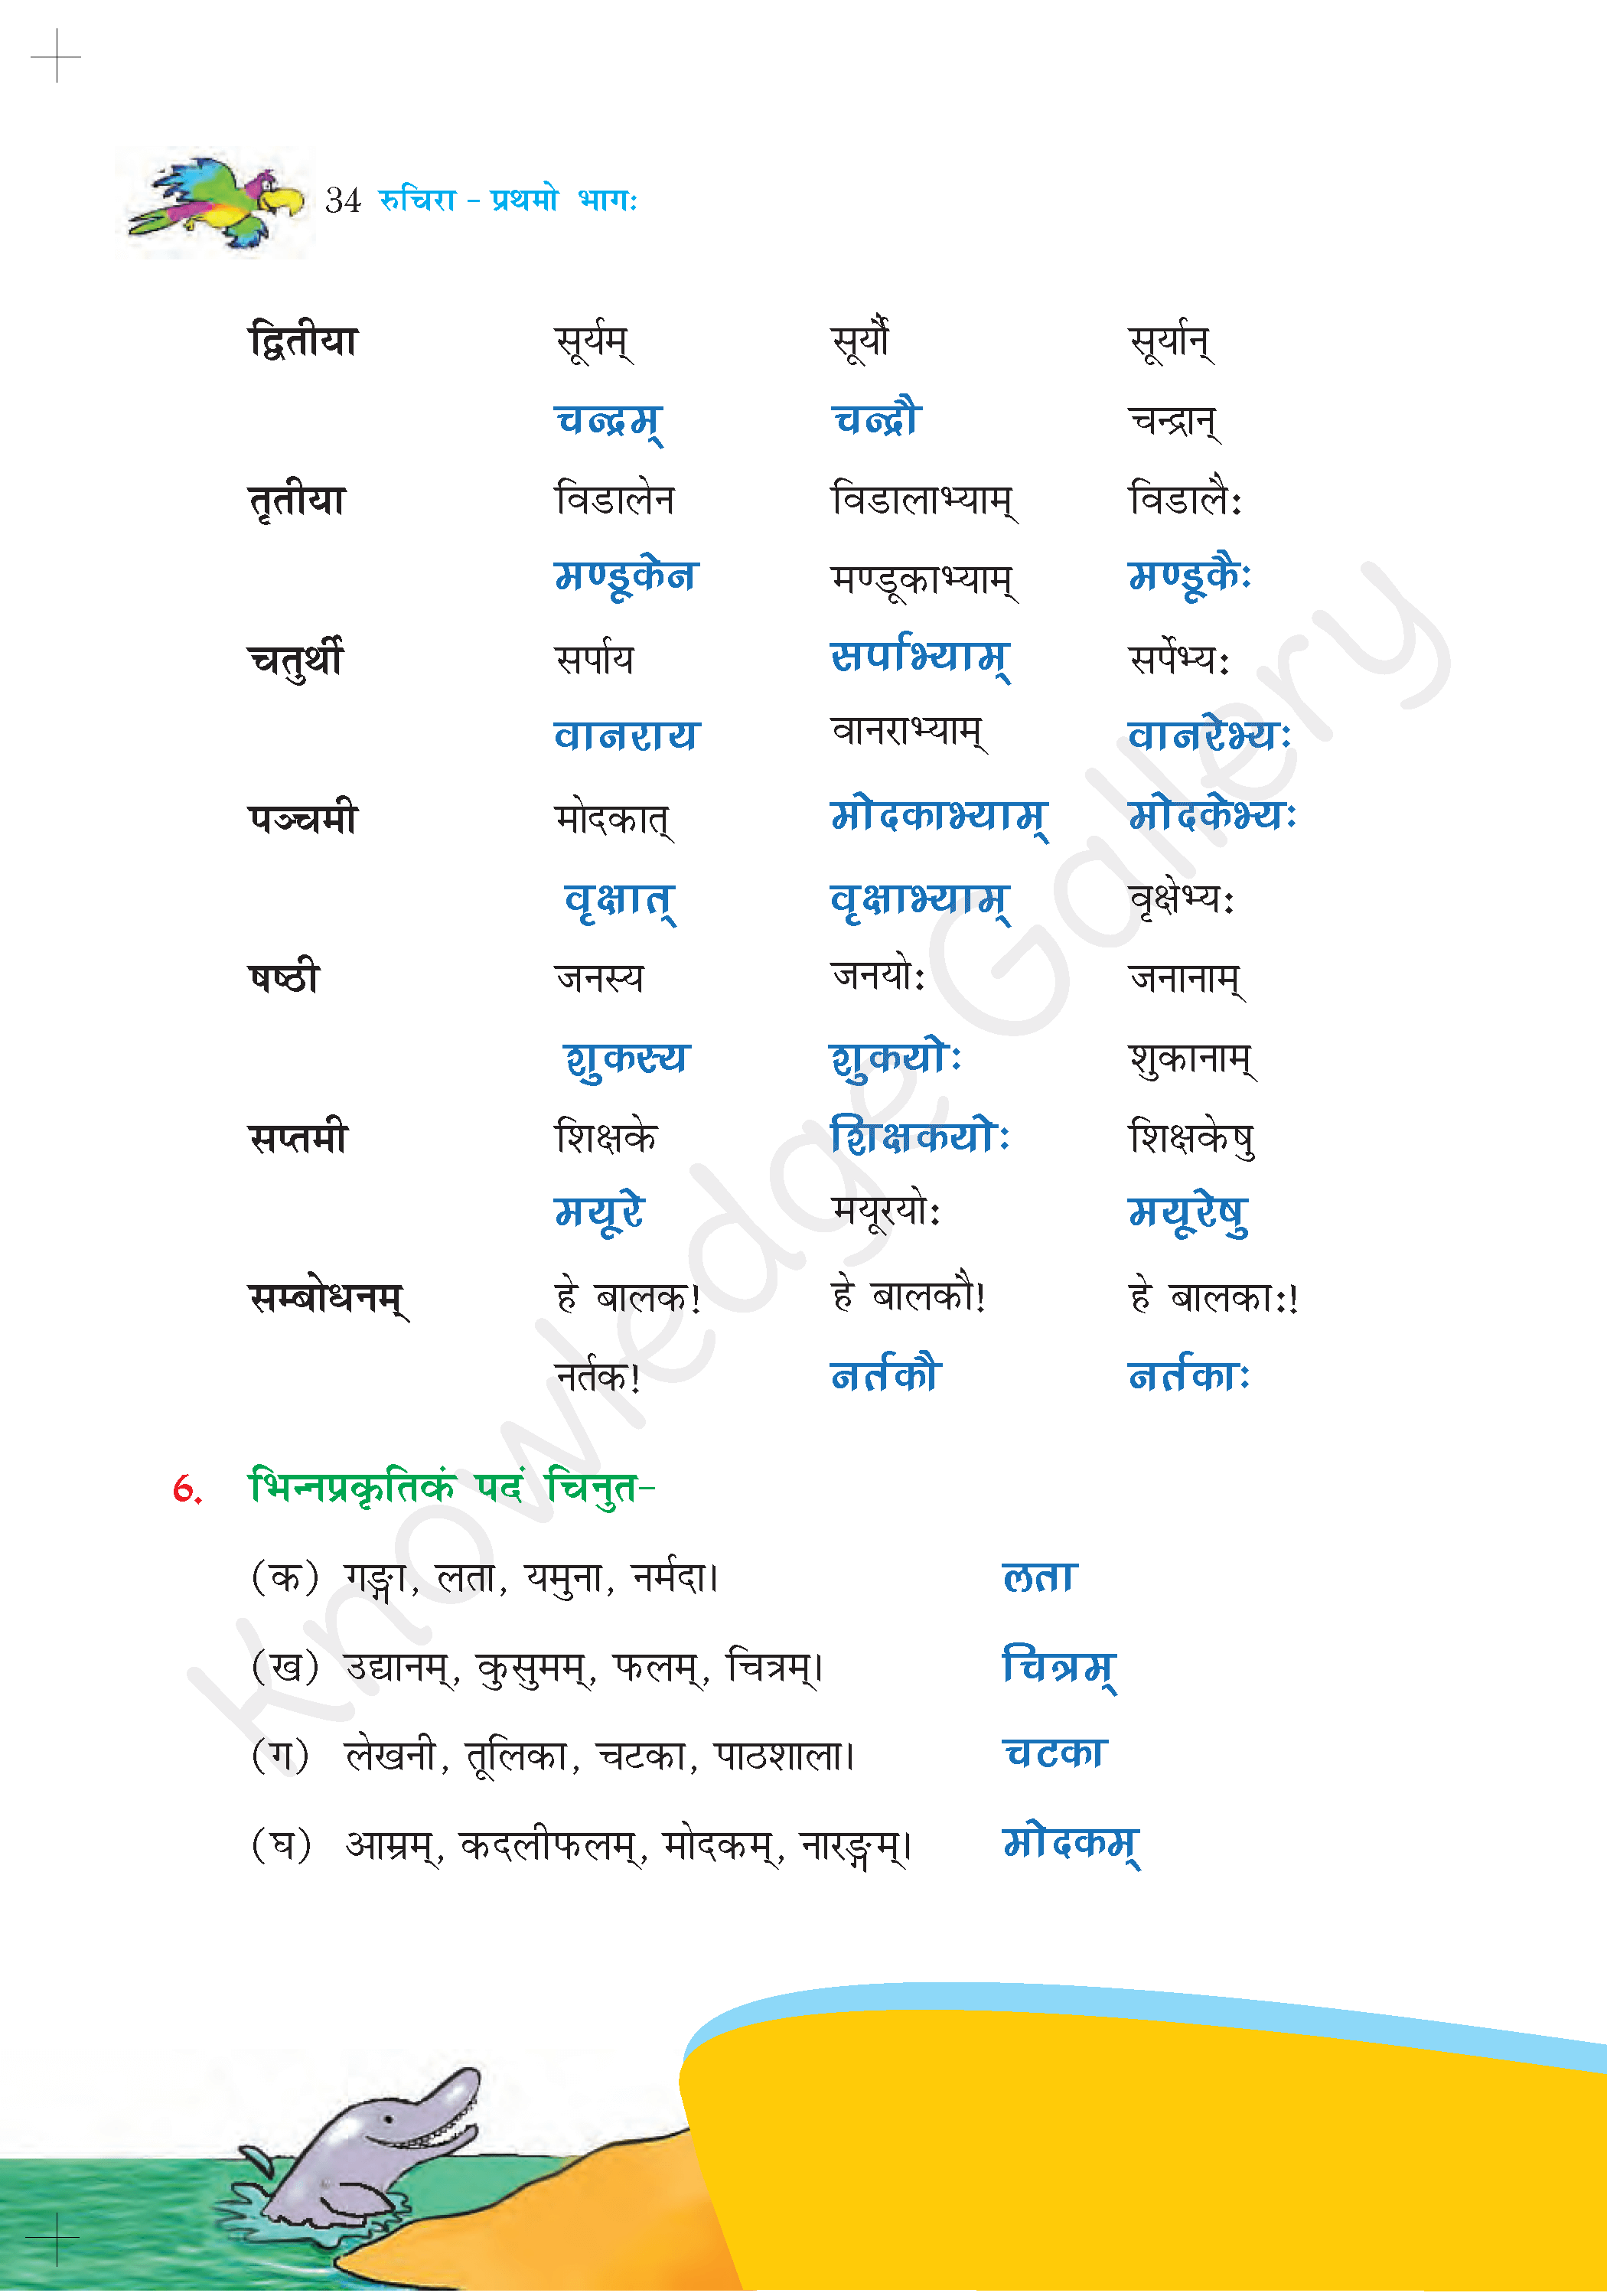 NCERT Solution For Class 6 Sanskrit Chapter 5 part 6